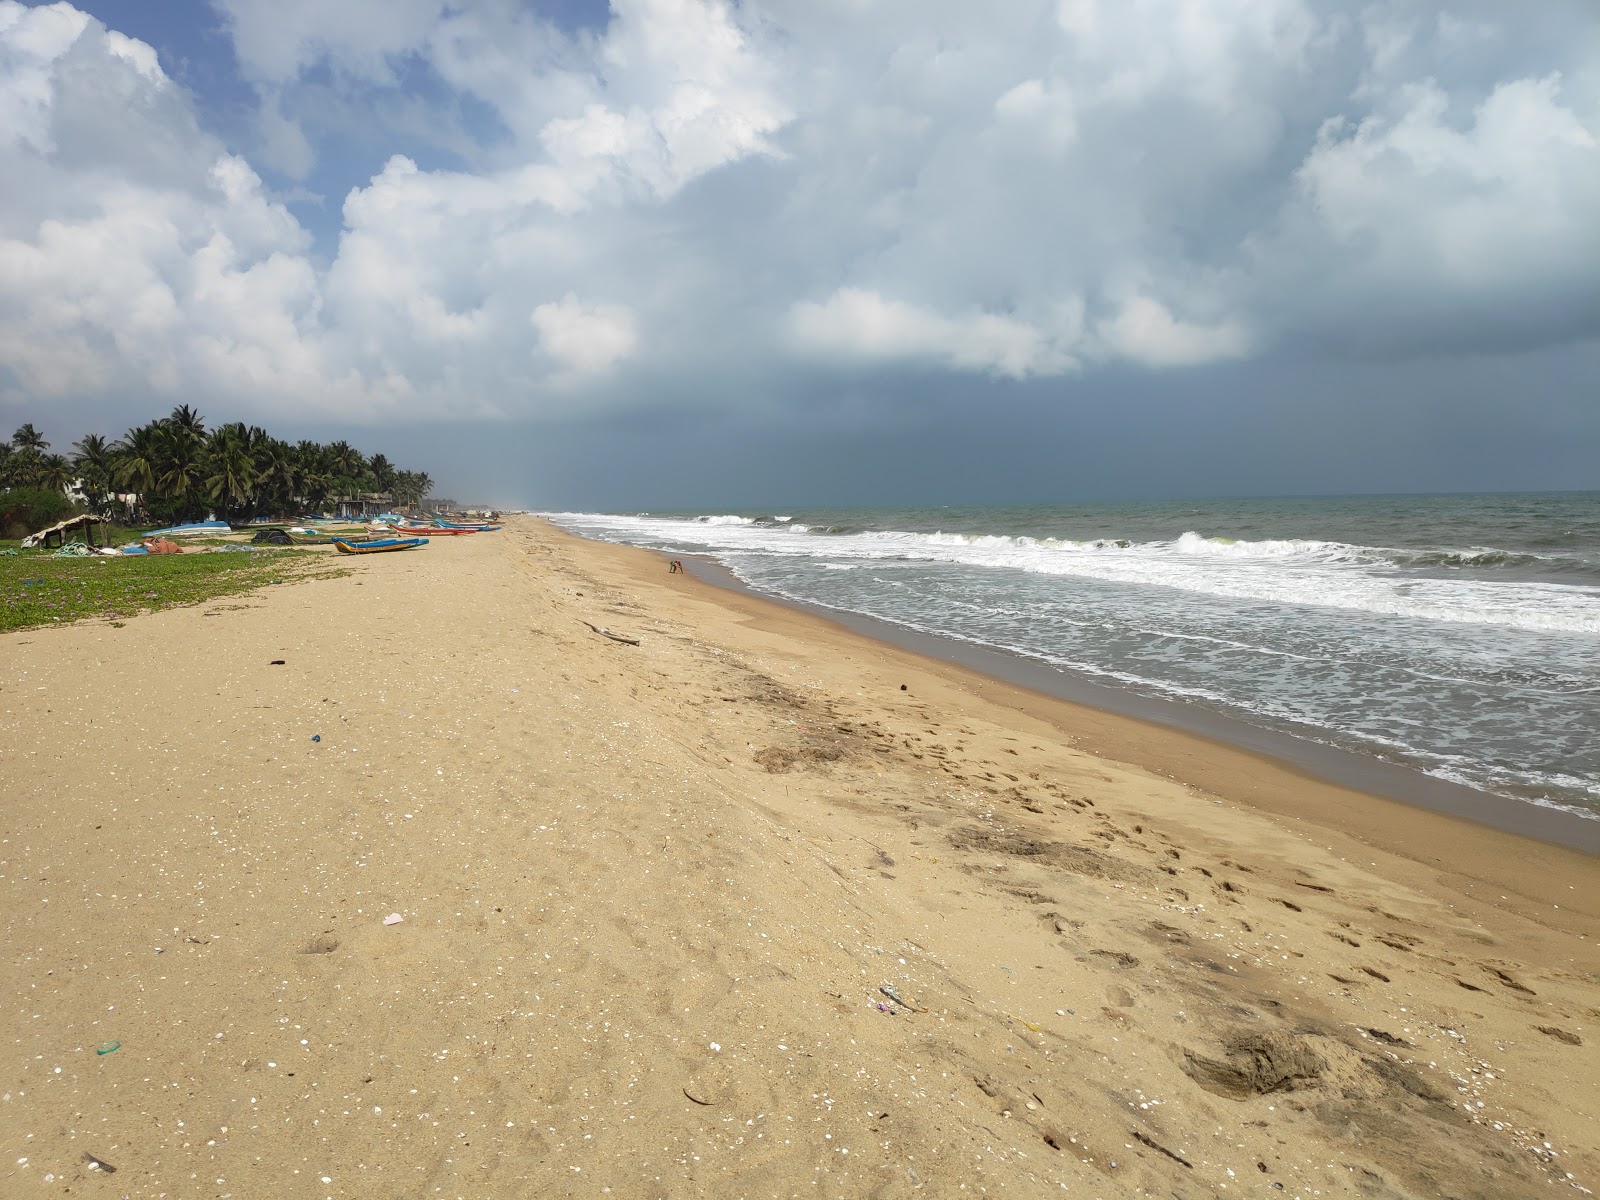 Fotografie cu Pondicherry University Beach cu o suprafață de nisip strălucitor